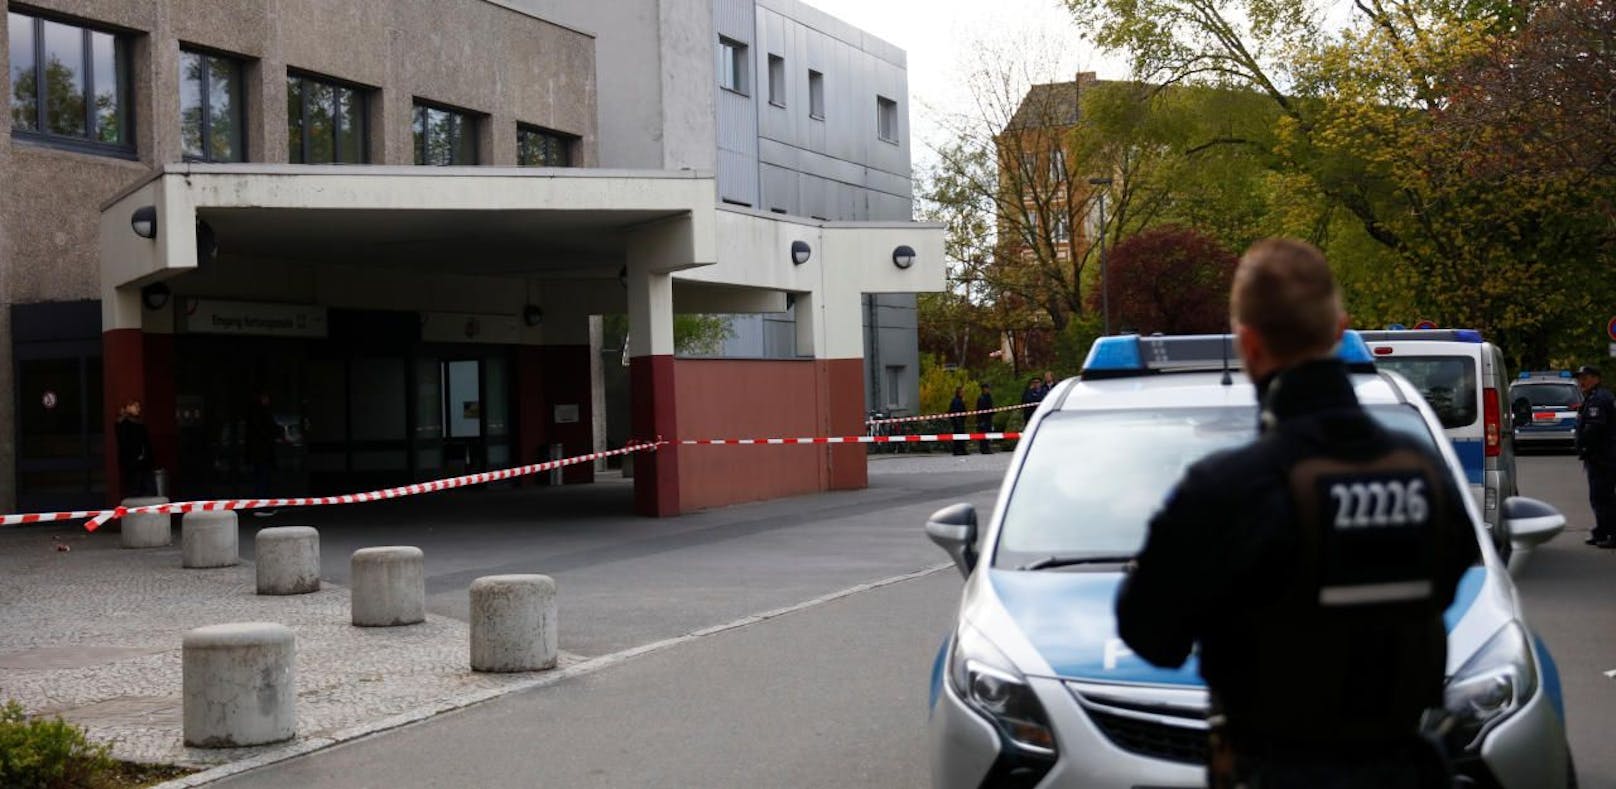 Polizei schießt Mann bei Spital in Berlin ins Bein